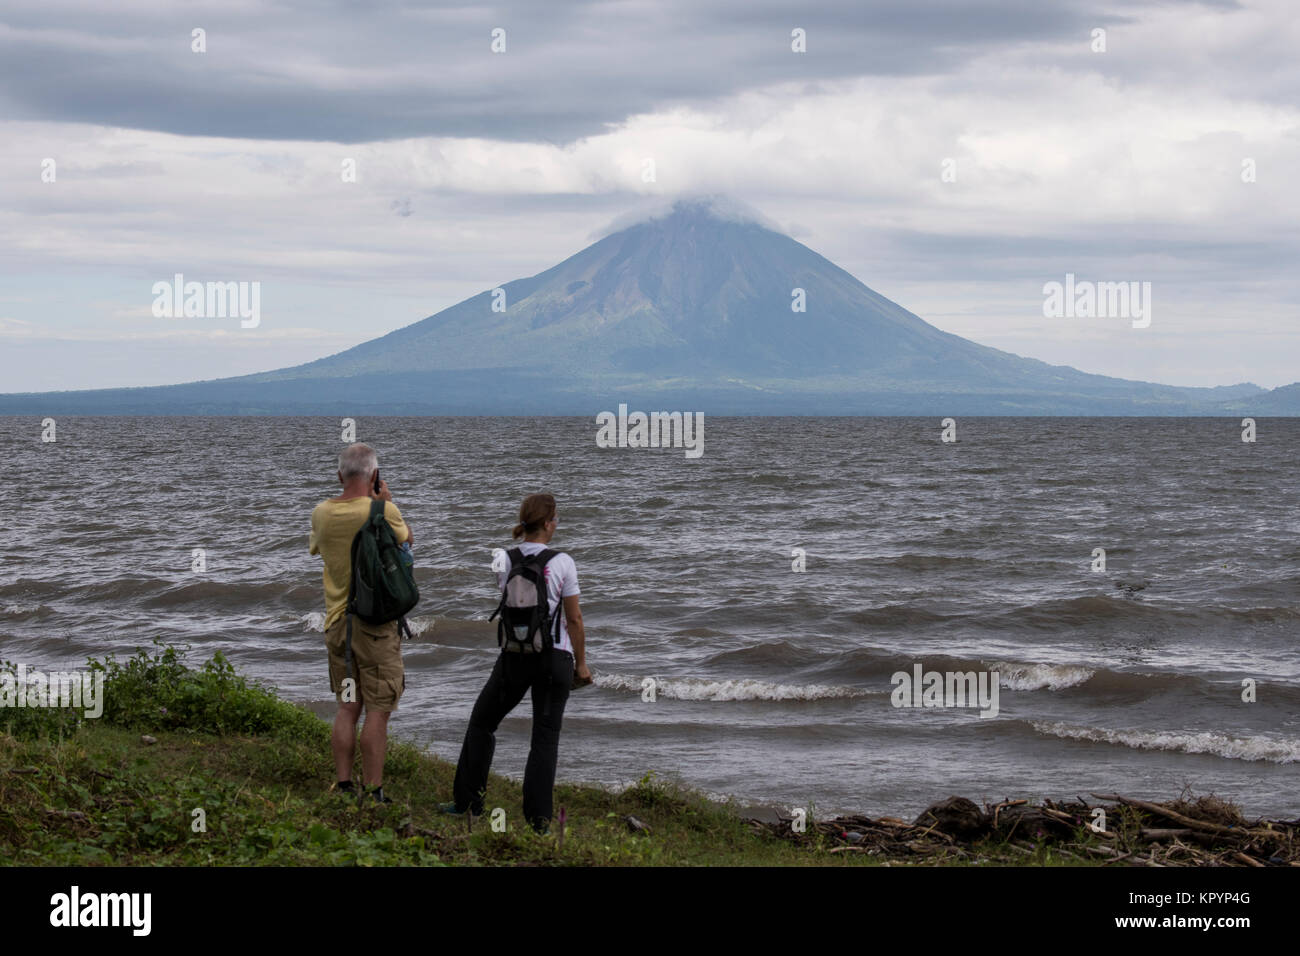 Mittelamerika, Nicaragua Abteilung der Rivas, den Nicaragua See. Blick auf eine der zwei Vulkane, Concepción auf der Insel Ometepe. Stockfoto